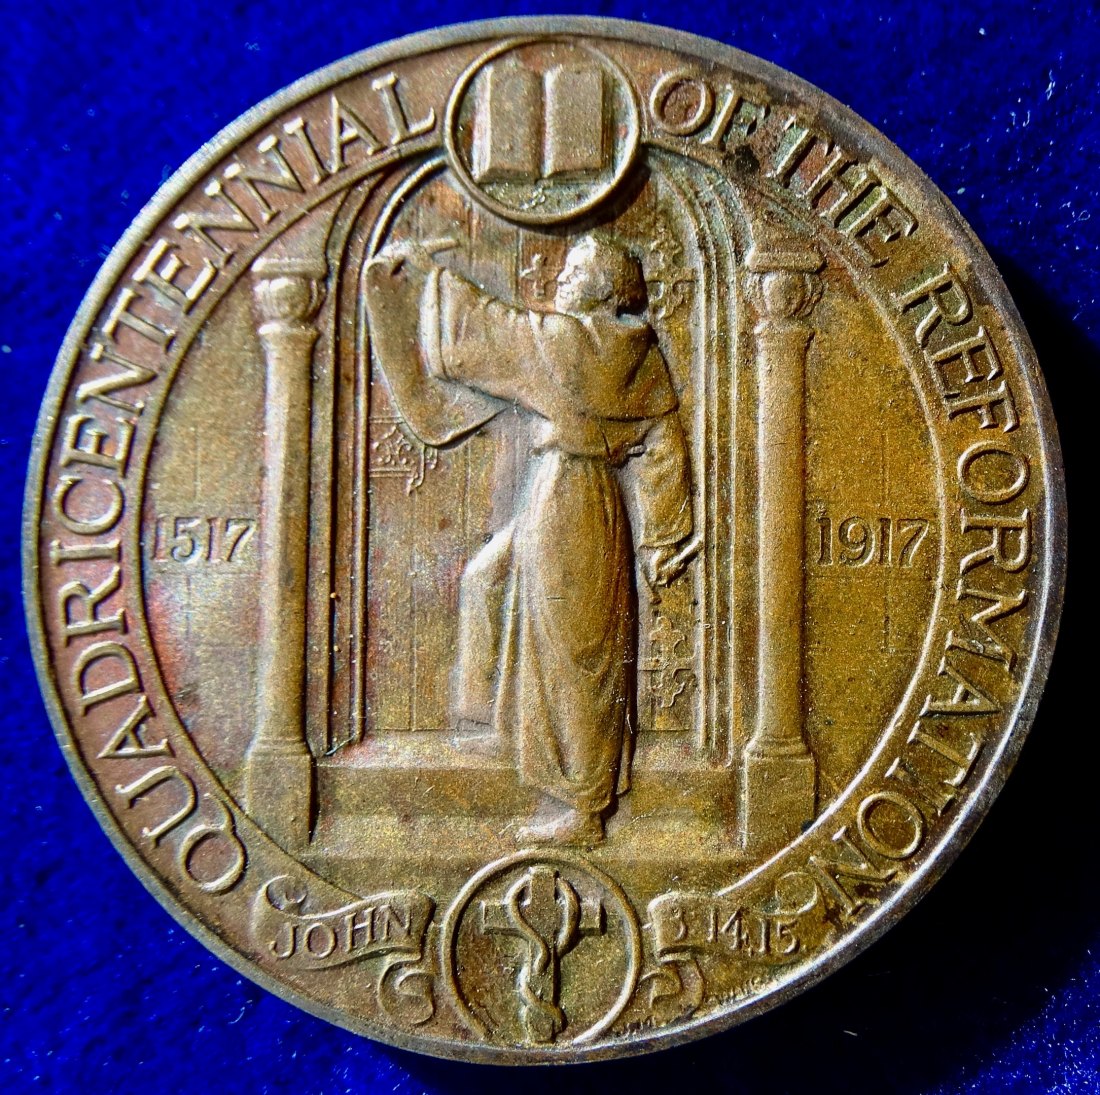  Chicago, USA, 1917 Medaille zur 400-Jahrfeier der Reformation   